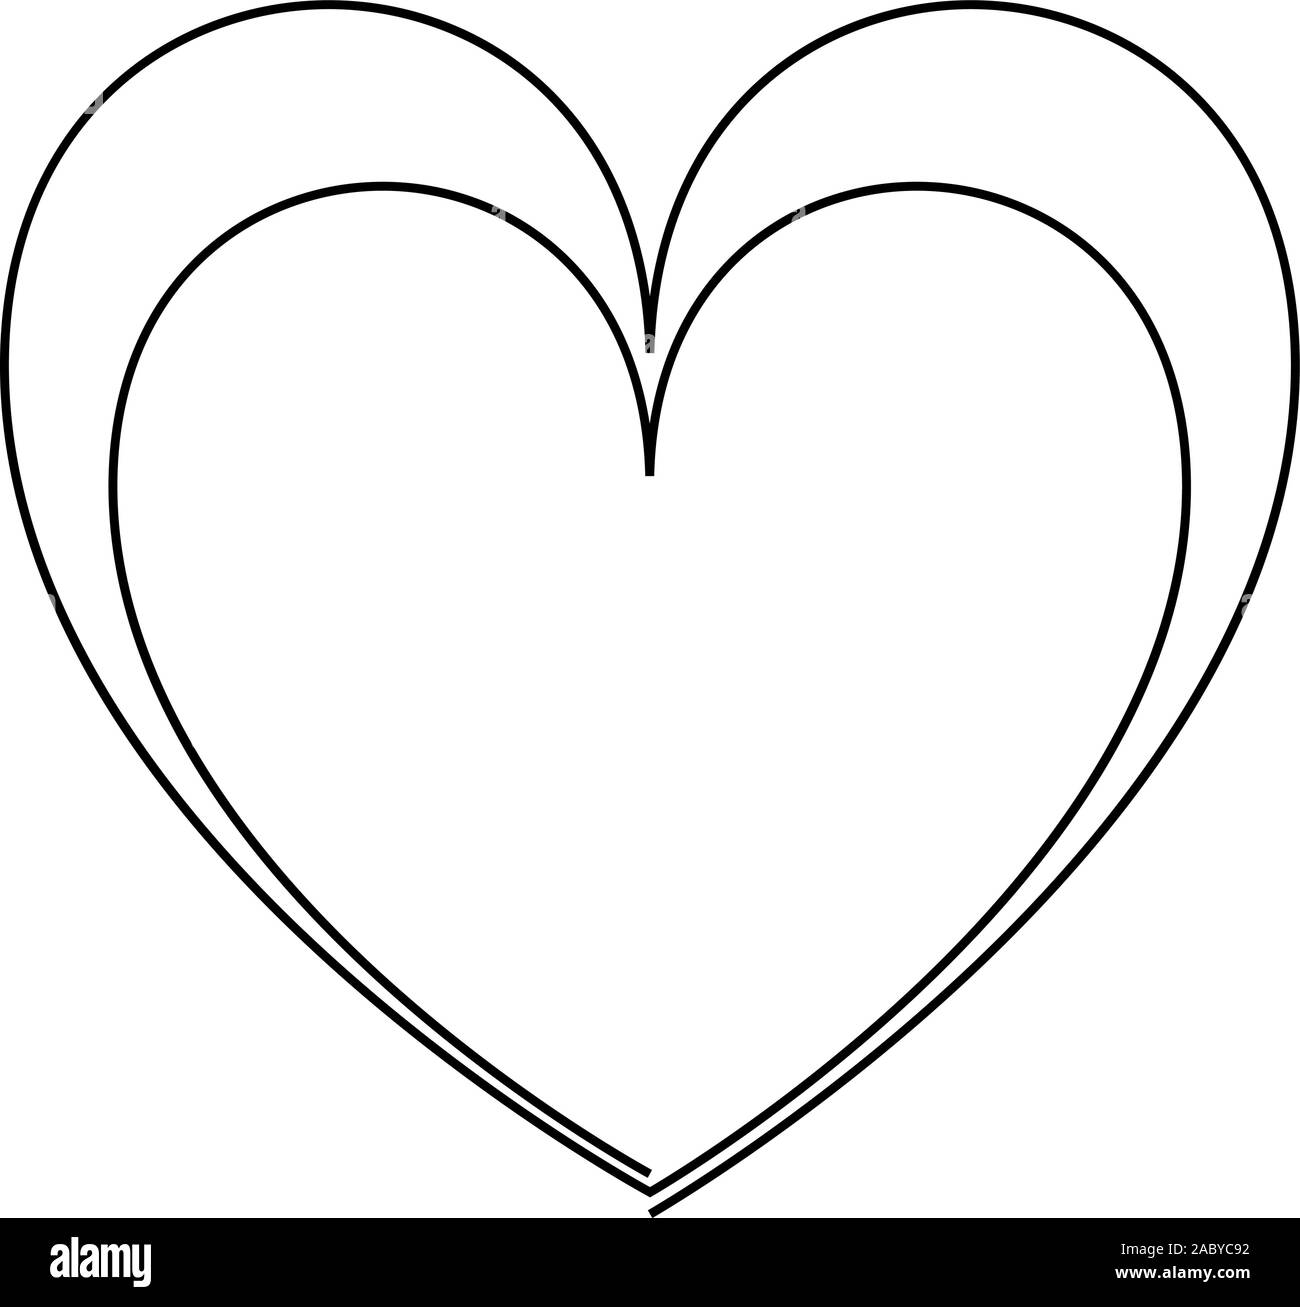 Rappresentazione in linea continua di due cuori, in bianco e nero minimalista di vettore illustrazione del concetto di amore. Uno o due cuori Illustrazione Vettoriale